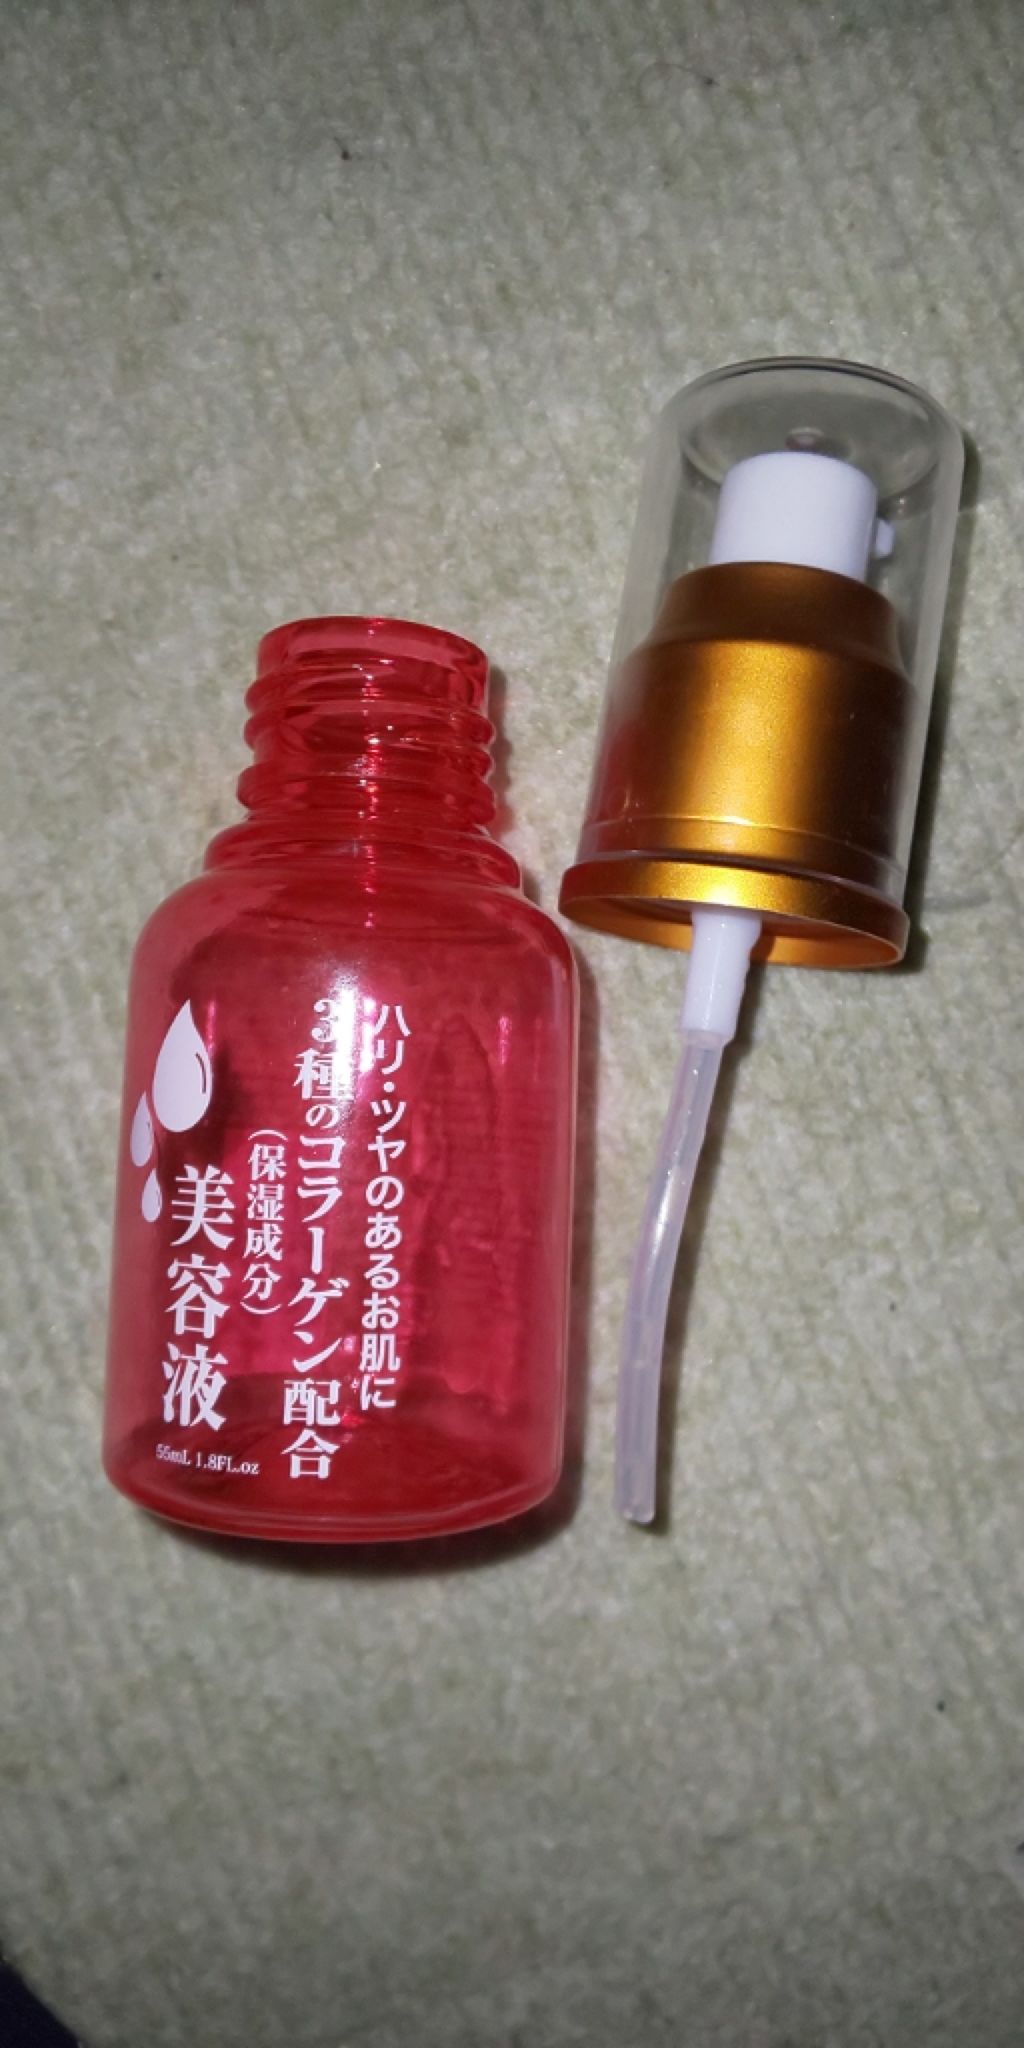 高評価の贈り物 クリスタルリップ 22 透明 クリア ヒアルロン酸 コラーゲン ペプチド配合 リップ美容液 日本製 6g